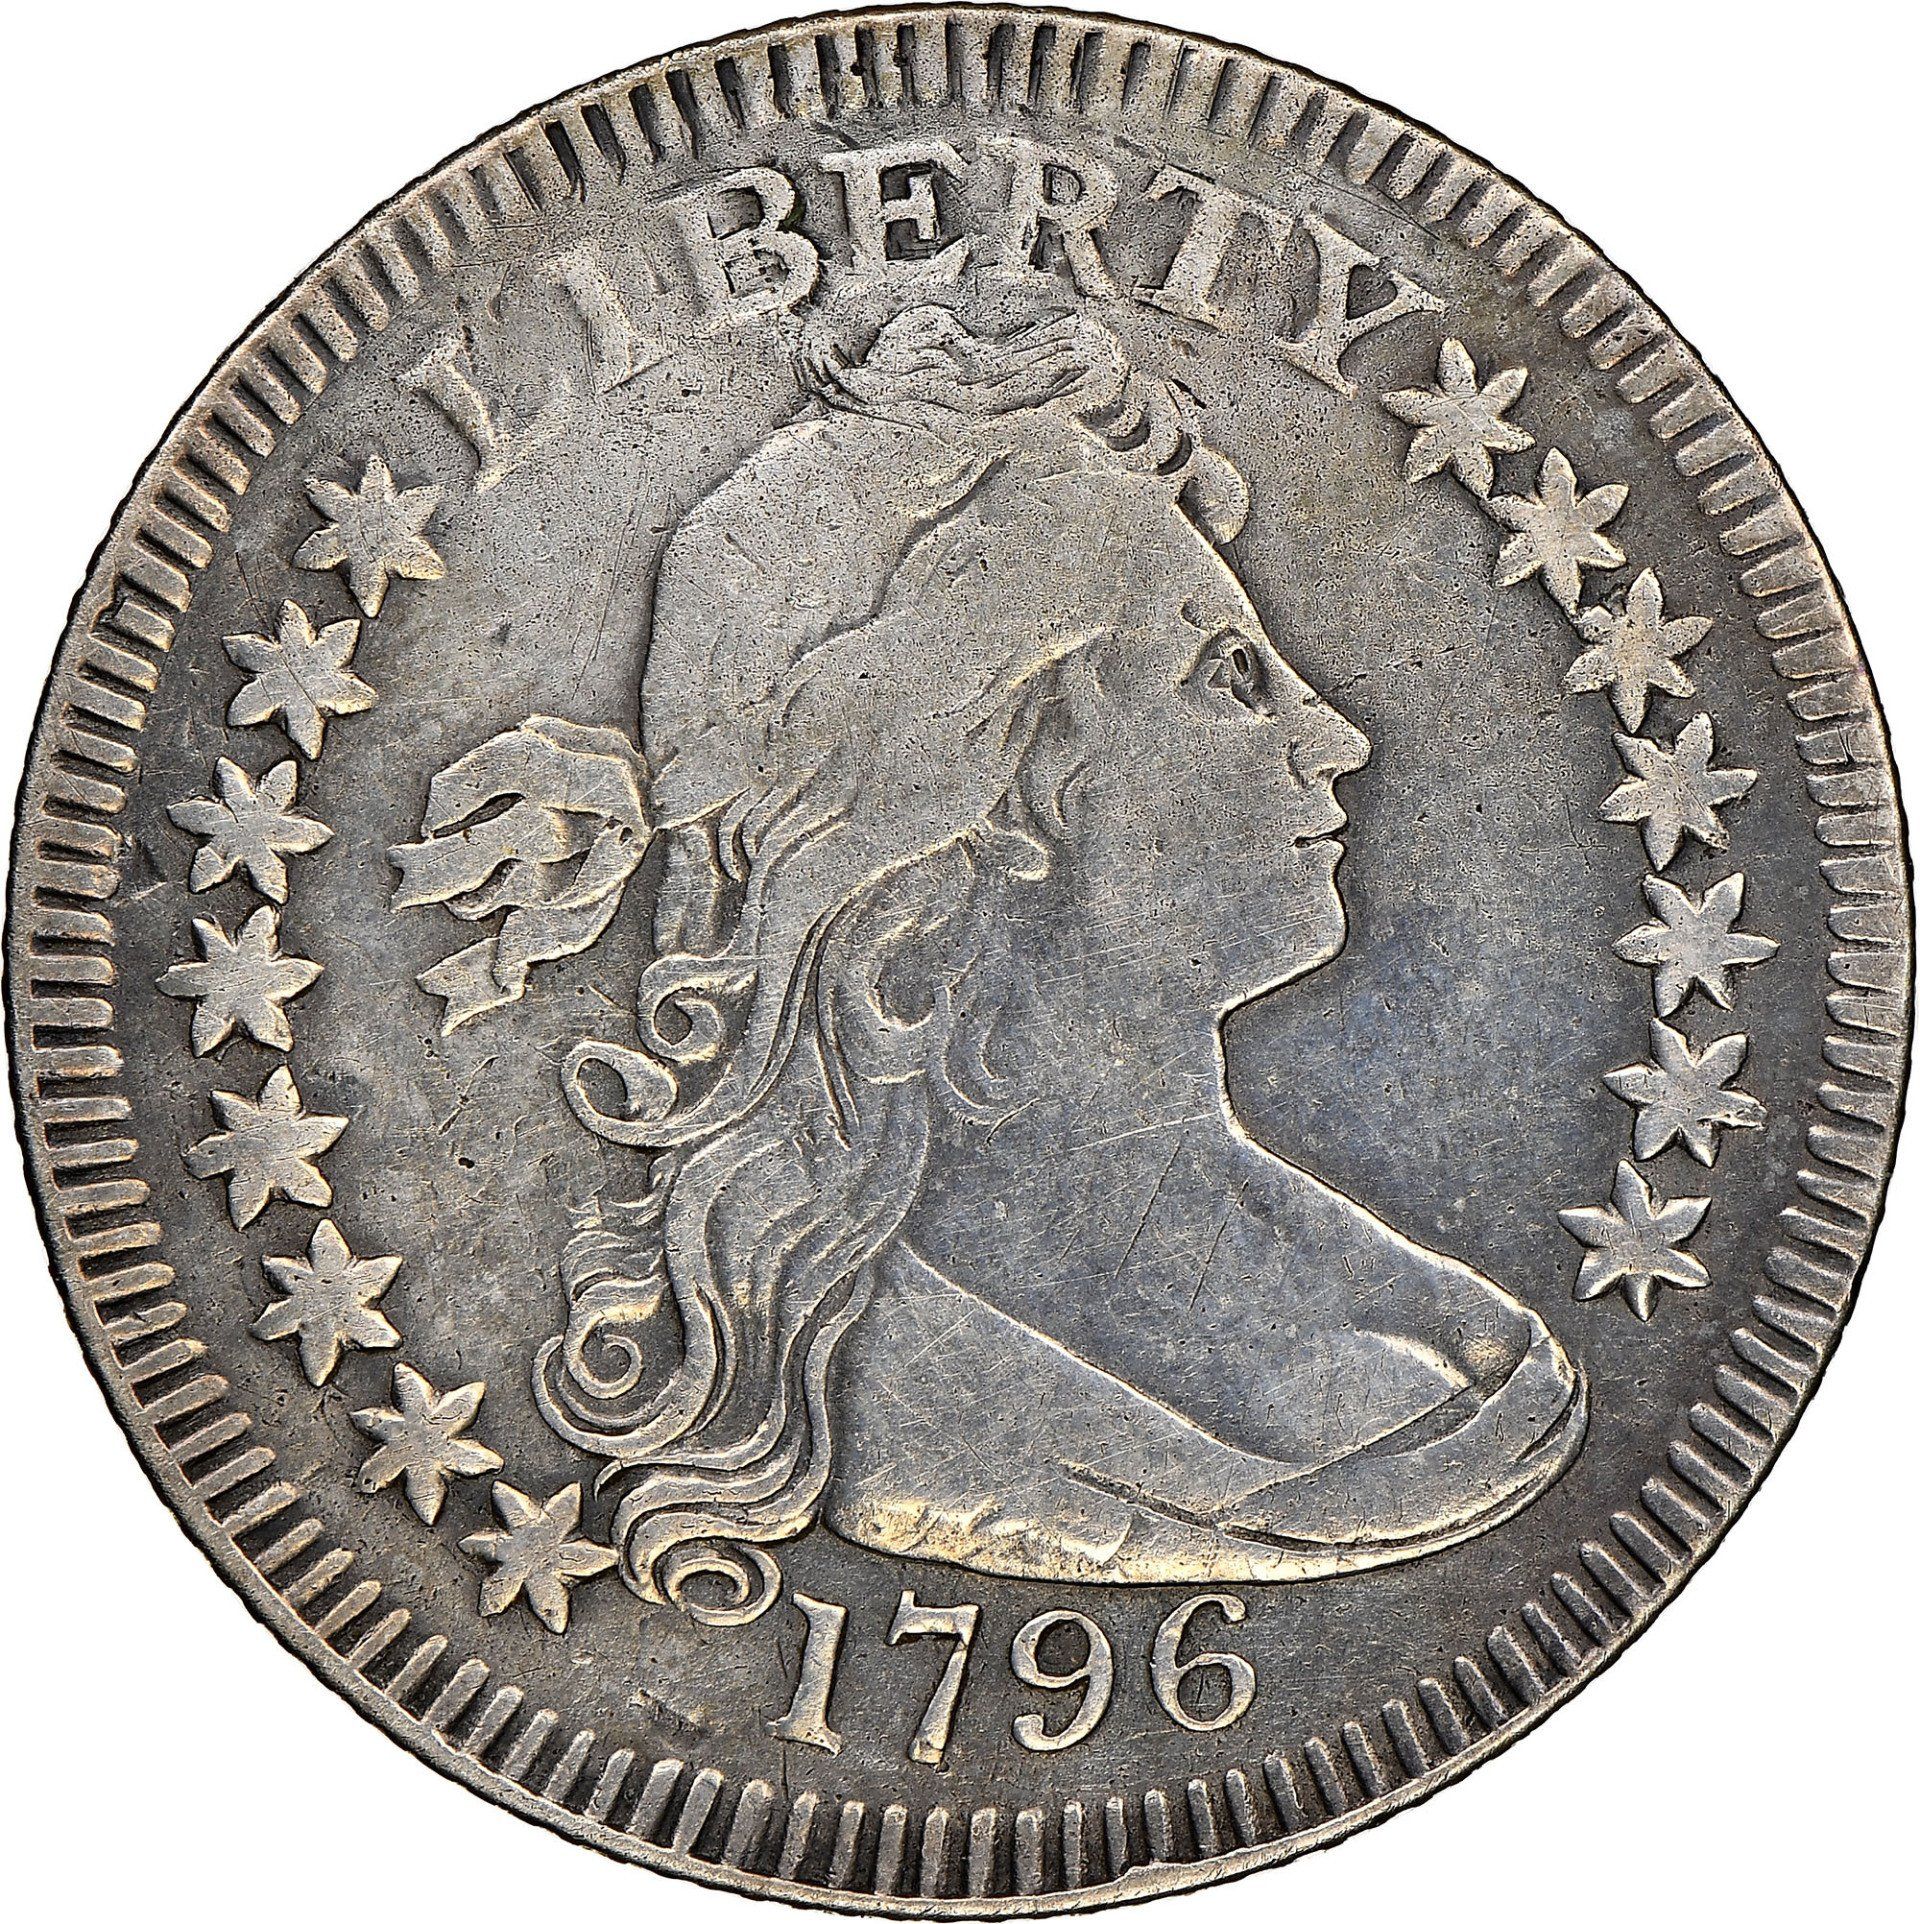 1796 Draped Bust quarter image courtesy of NGC